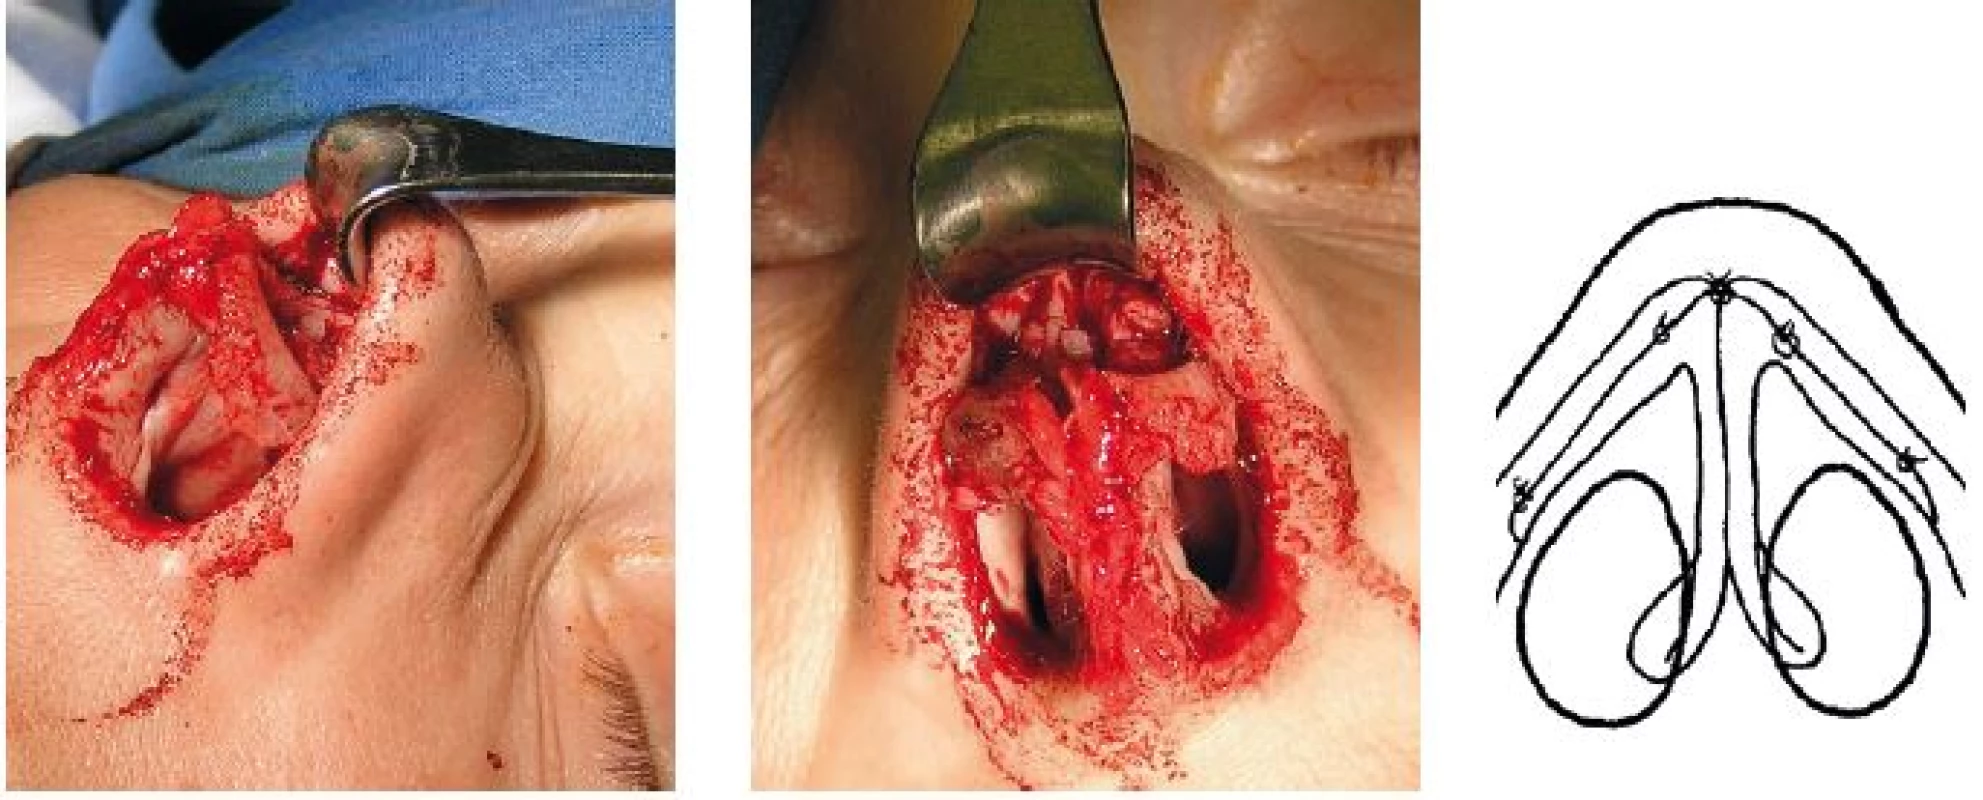 Vľavo: pohľad z boku chrupkové štepy sutúrované k zvyšku alárnej chrupky v žiadanej polohe. V strede: ďalší chrupkový štep vložený ako výplňový materiál na dorzum nosa do podkožného tunela. Na konci rekonštrukcie nasleduje sutúra dómov v novej pozícii. Vpravo: schéma augmentácie v rozsahu celého laterálneho ramena.